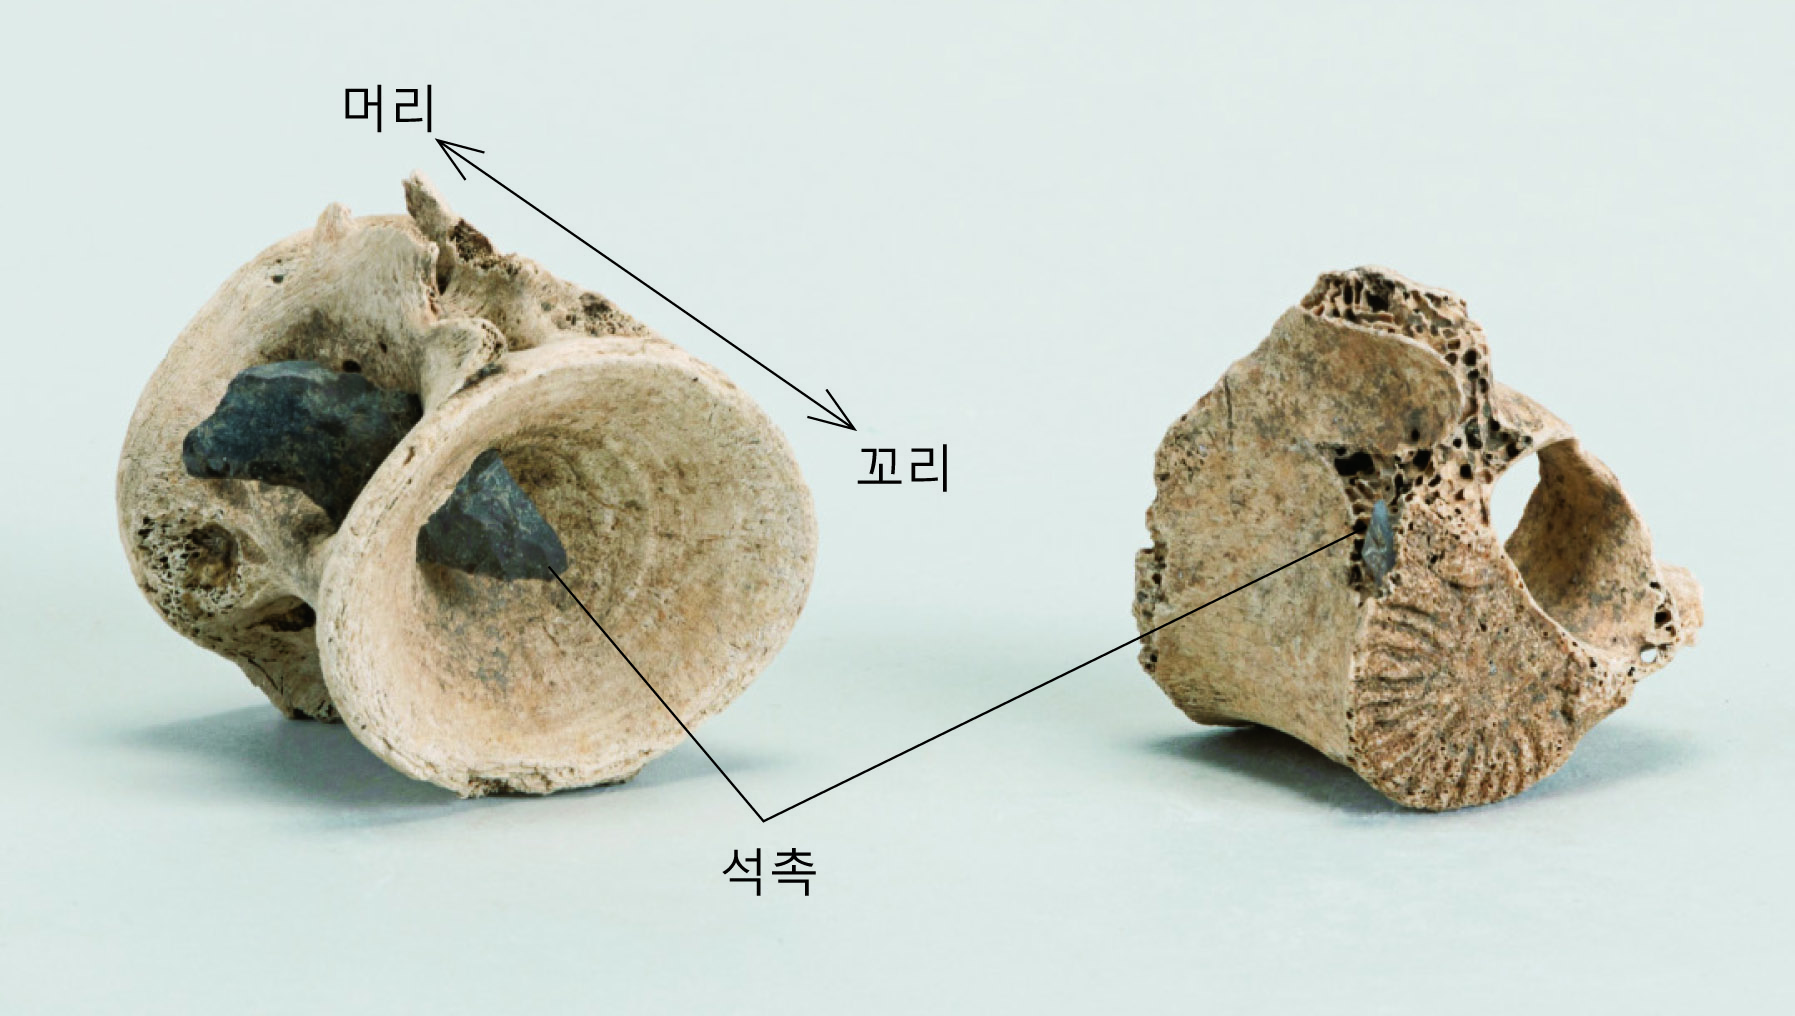 석촉이 박힌 다랑어(사진 좌)와 사슴의 등뼈